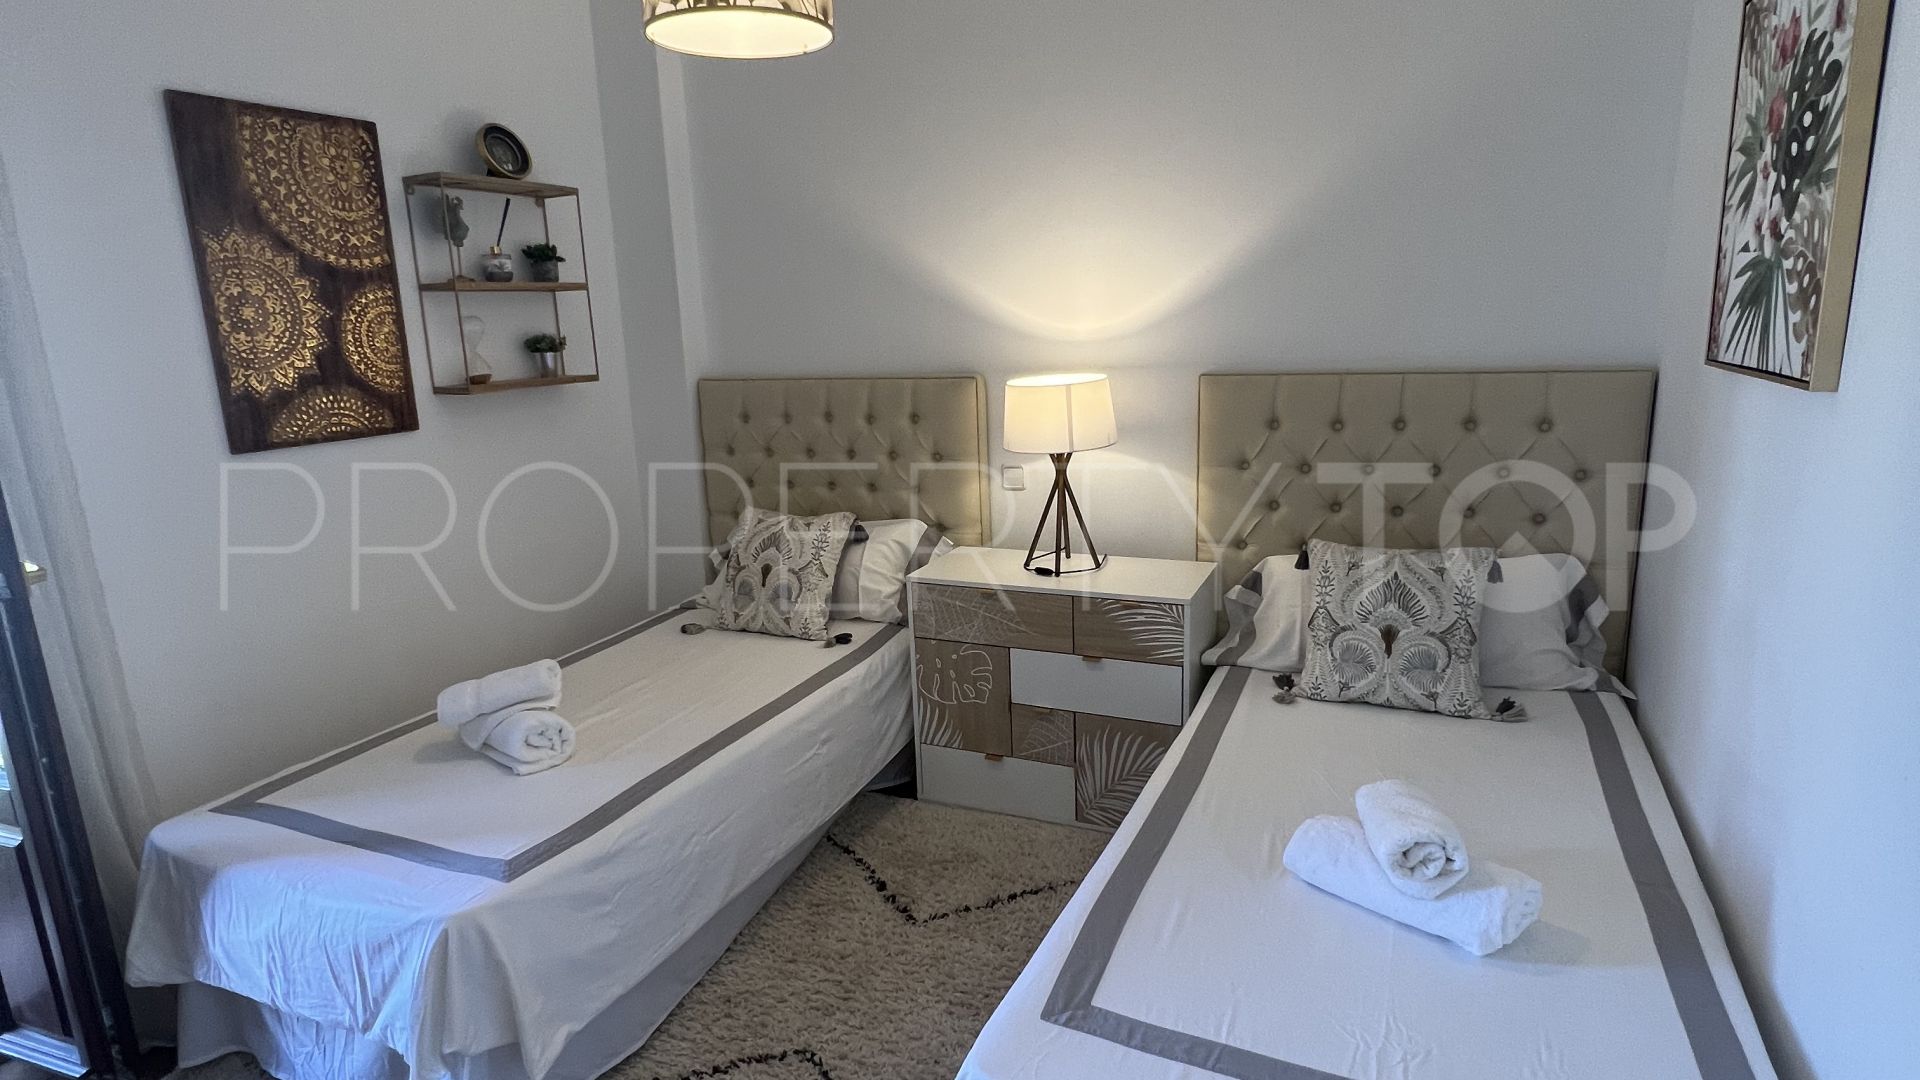 Apartment with 2 bedrooms for sale in Señorio de Marbella